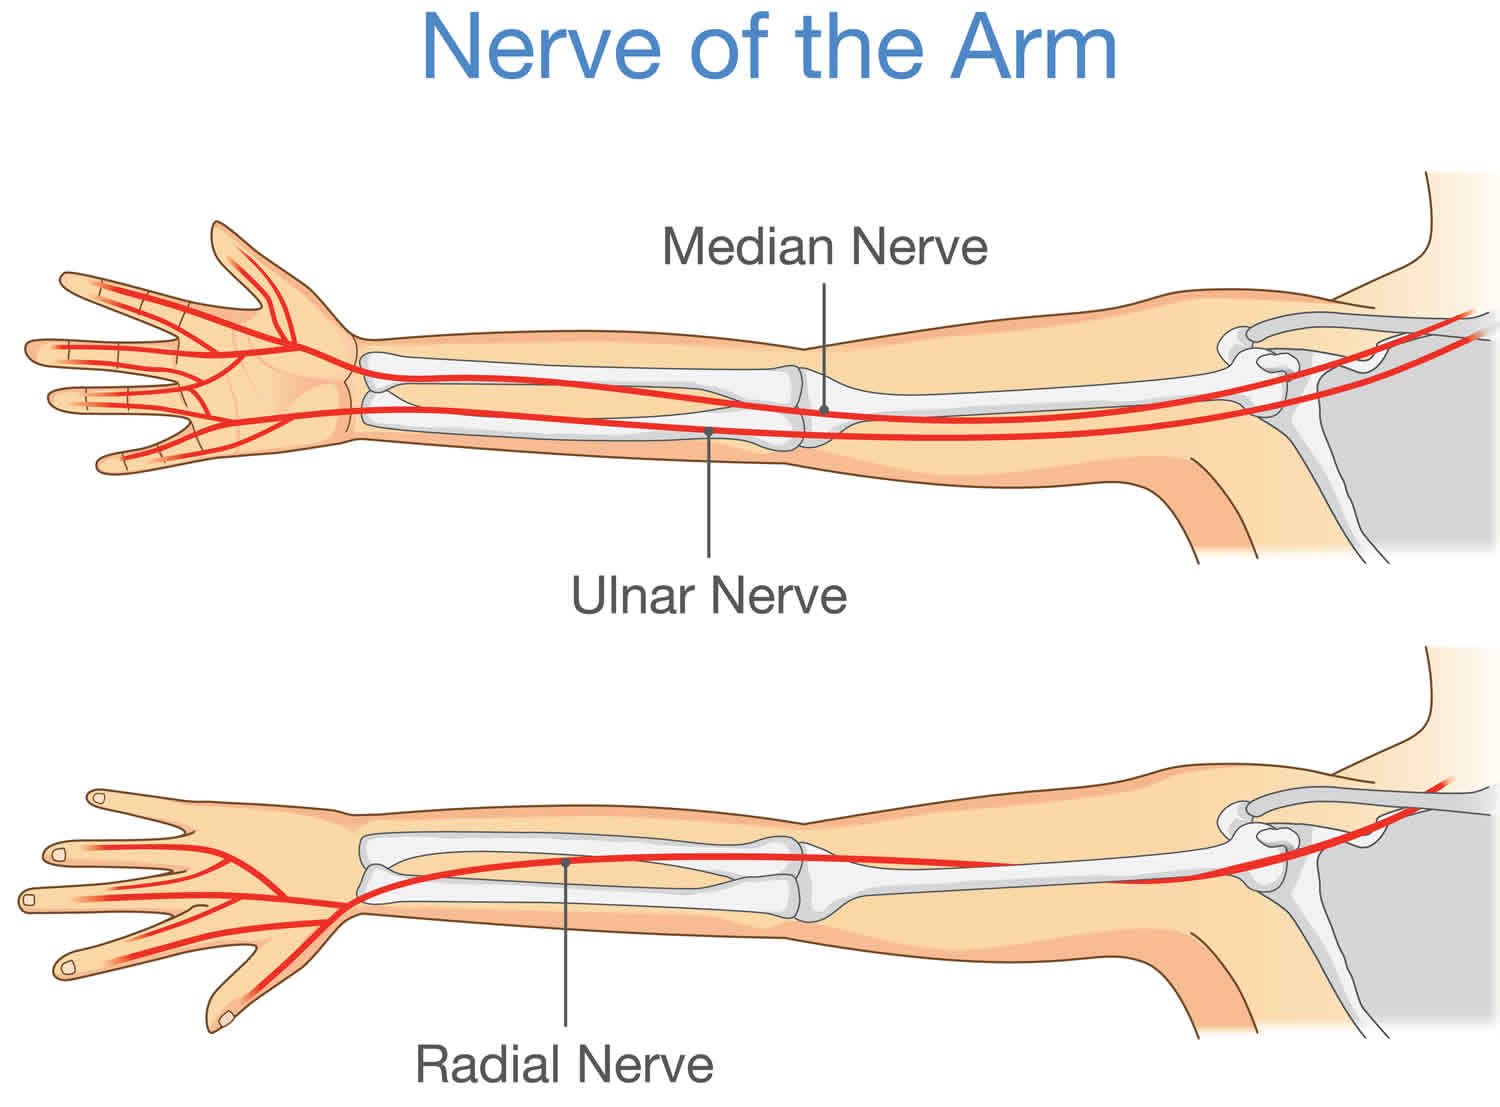 ulnar nerve palsy